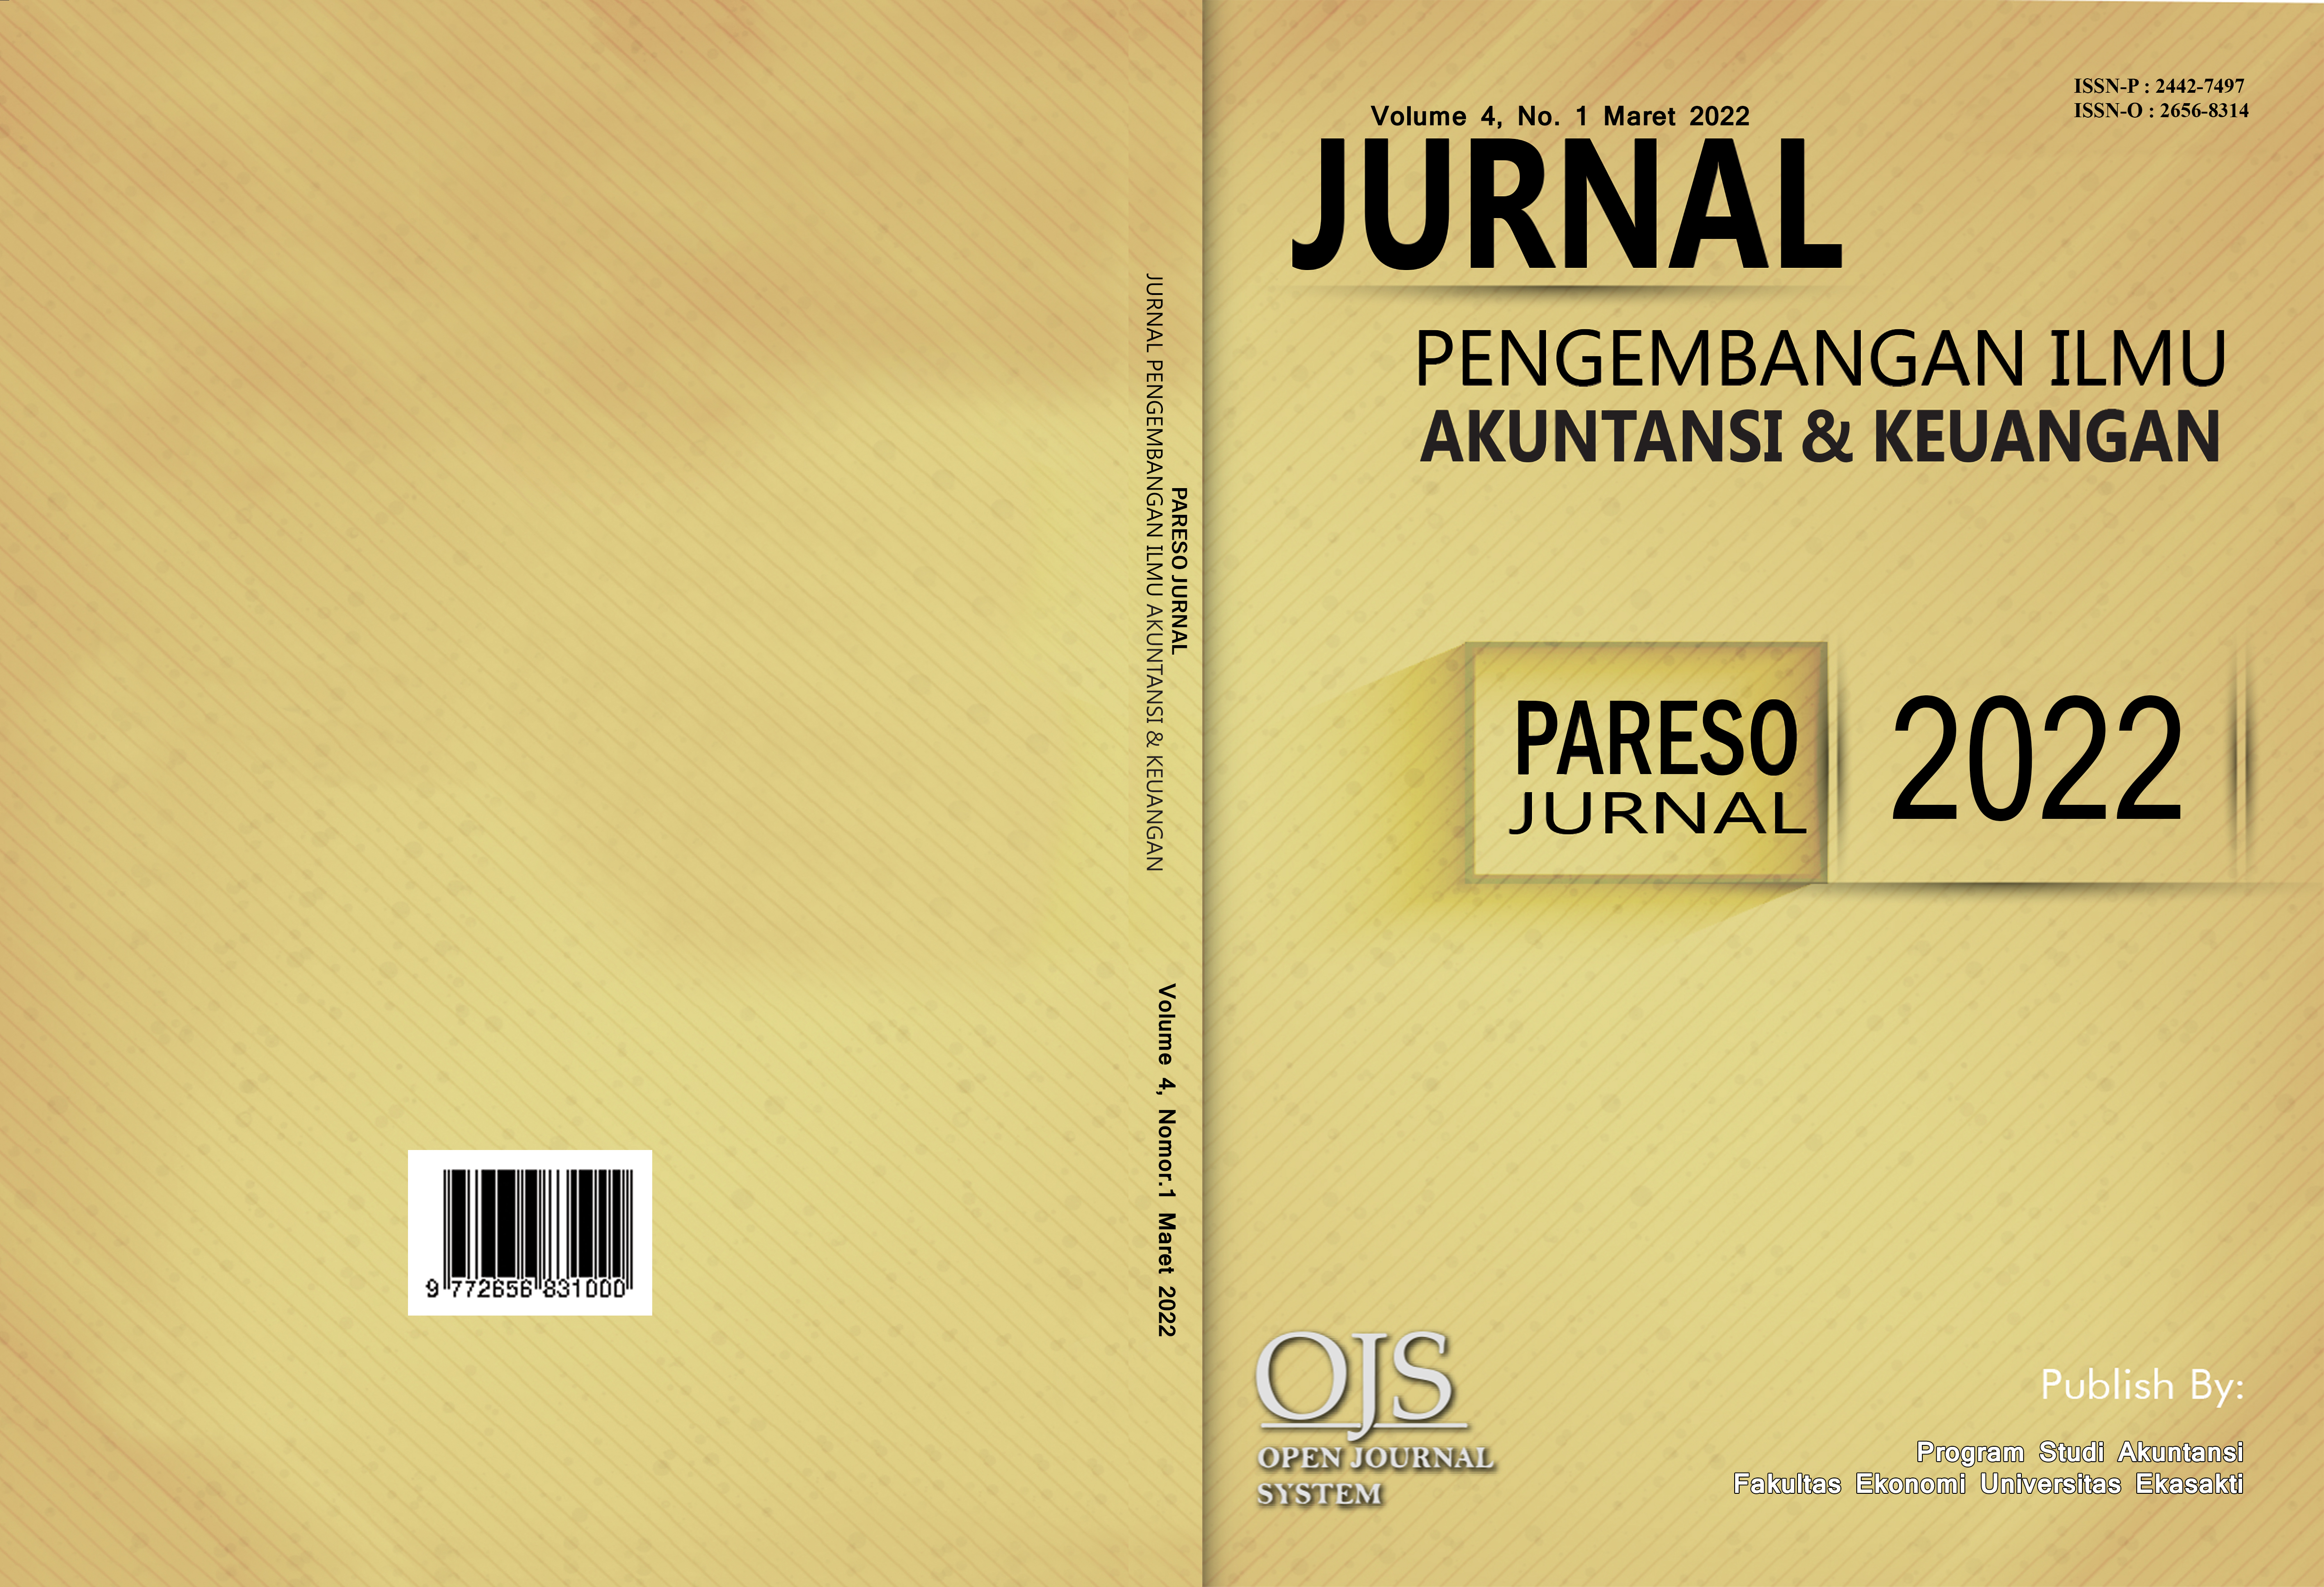 					View Vol. 4 No. 1 (2022): PARESO JURNAL (JURNAL PENGEMBANGAN ILMU AKUNTANSI & KEUANGAN) (MARET 2022)
				